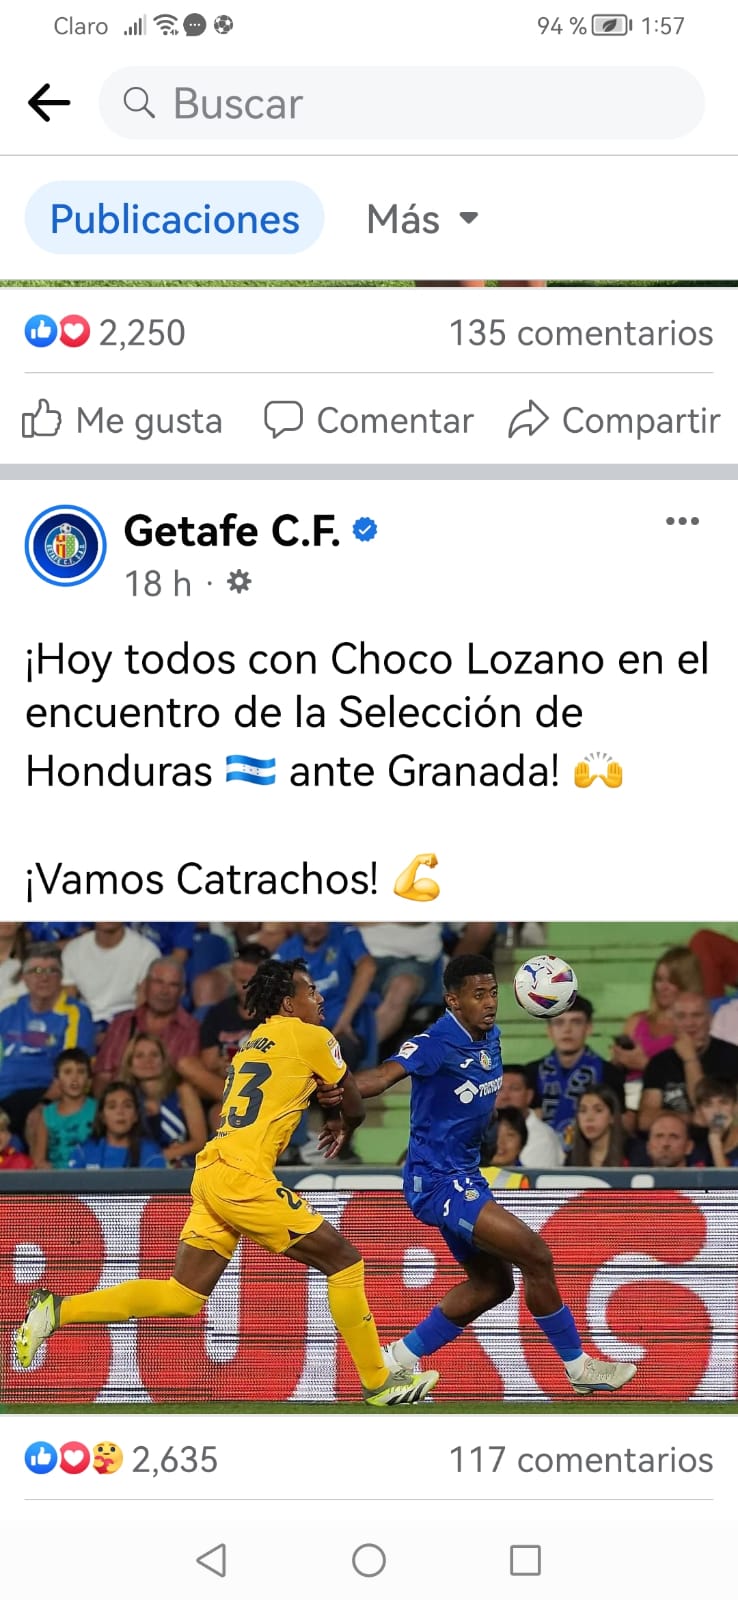 El día del partido contra Granada, el Getafe publicó un párrafo y una gráfica del "Choco" Lozano en su apoyo y para la Selección Nacional de Honduras.